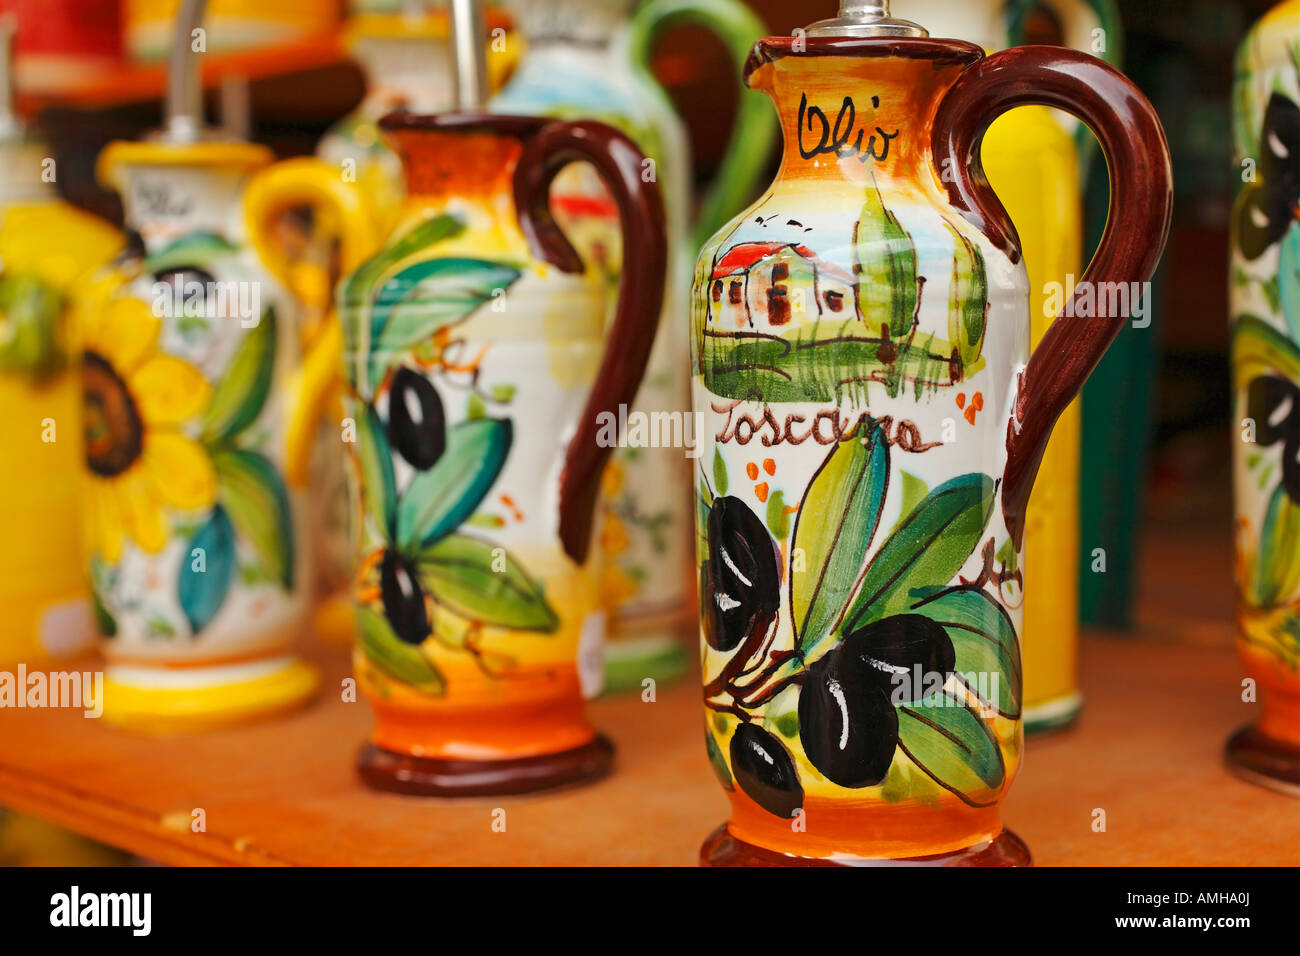 Ceramica bottiglie di olio, Mercato Centrale, Firenze, Italia Foto Stock